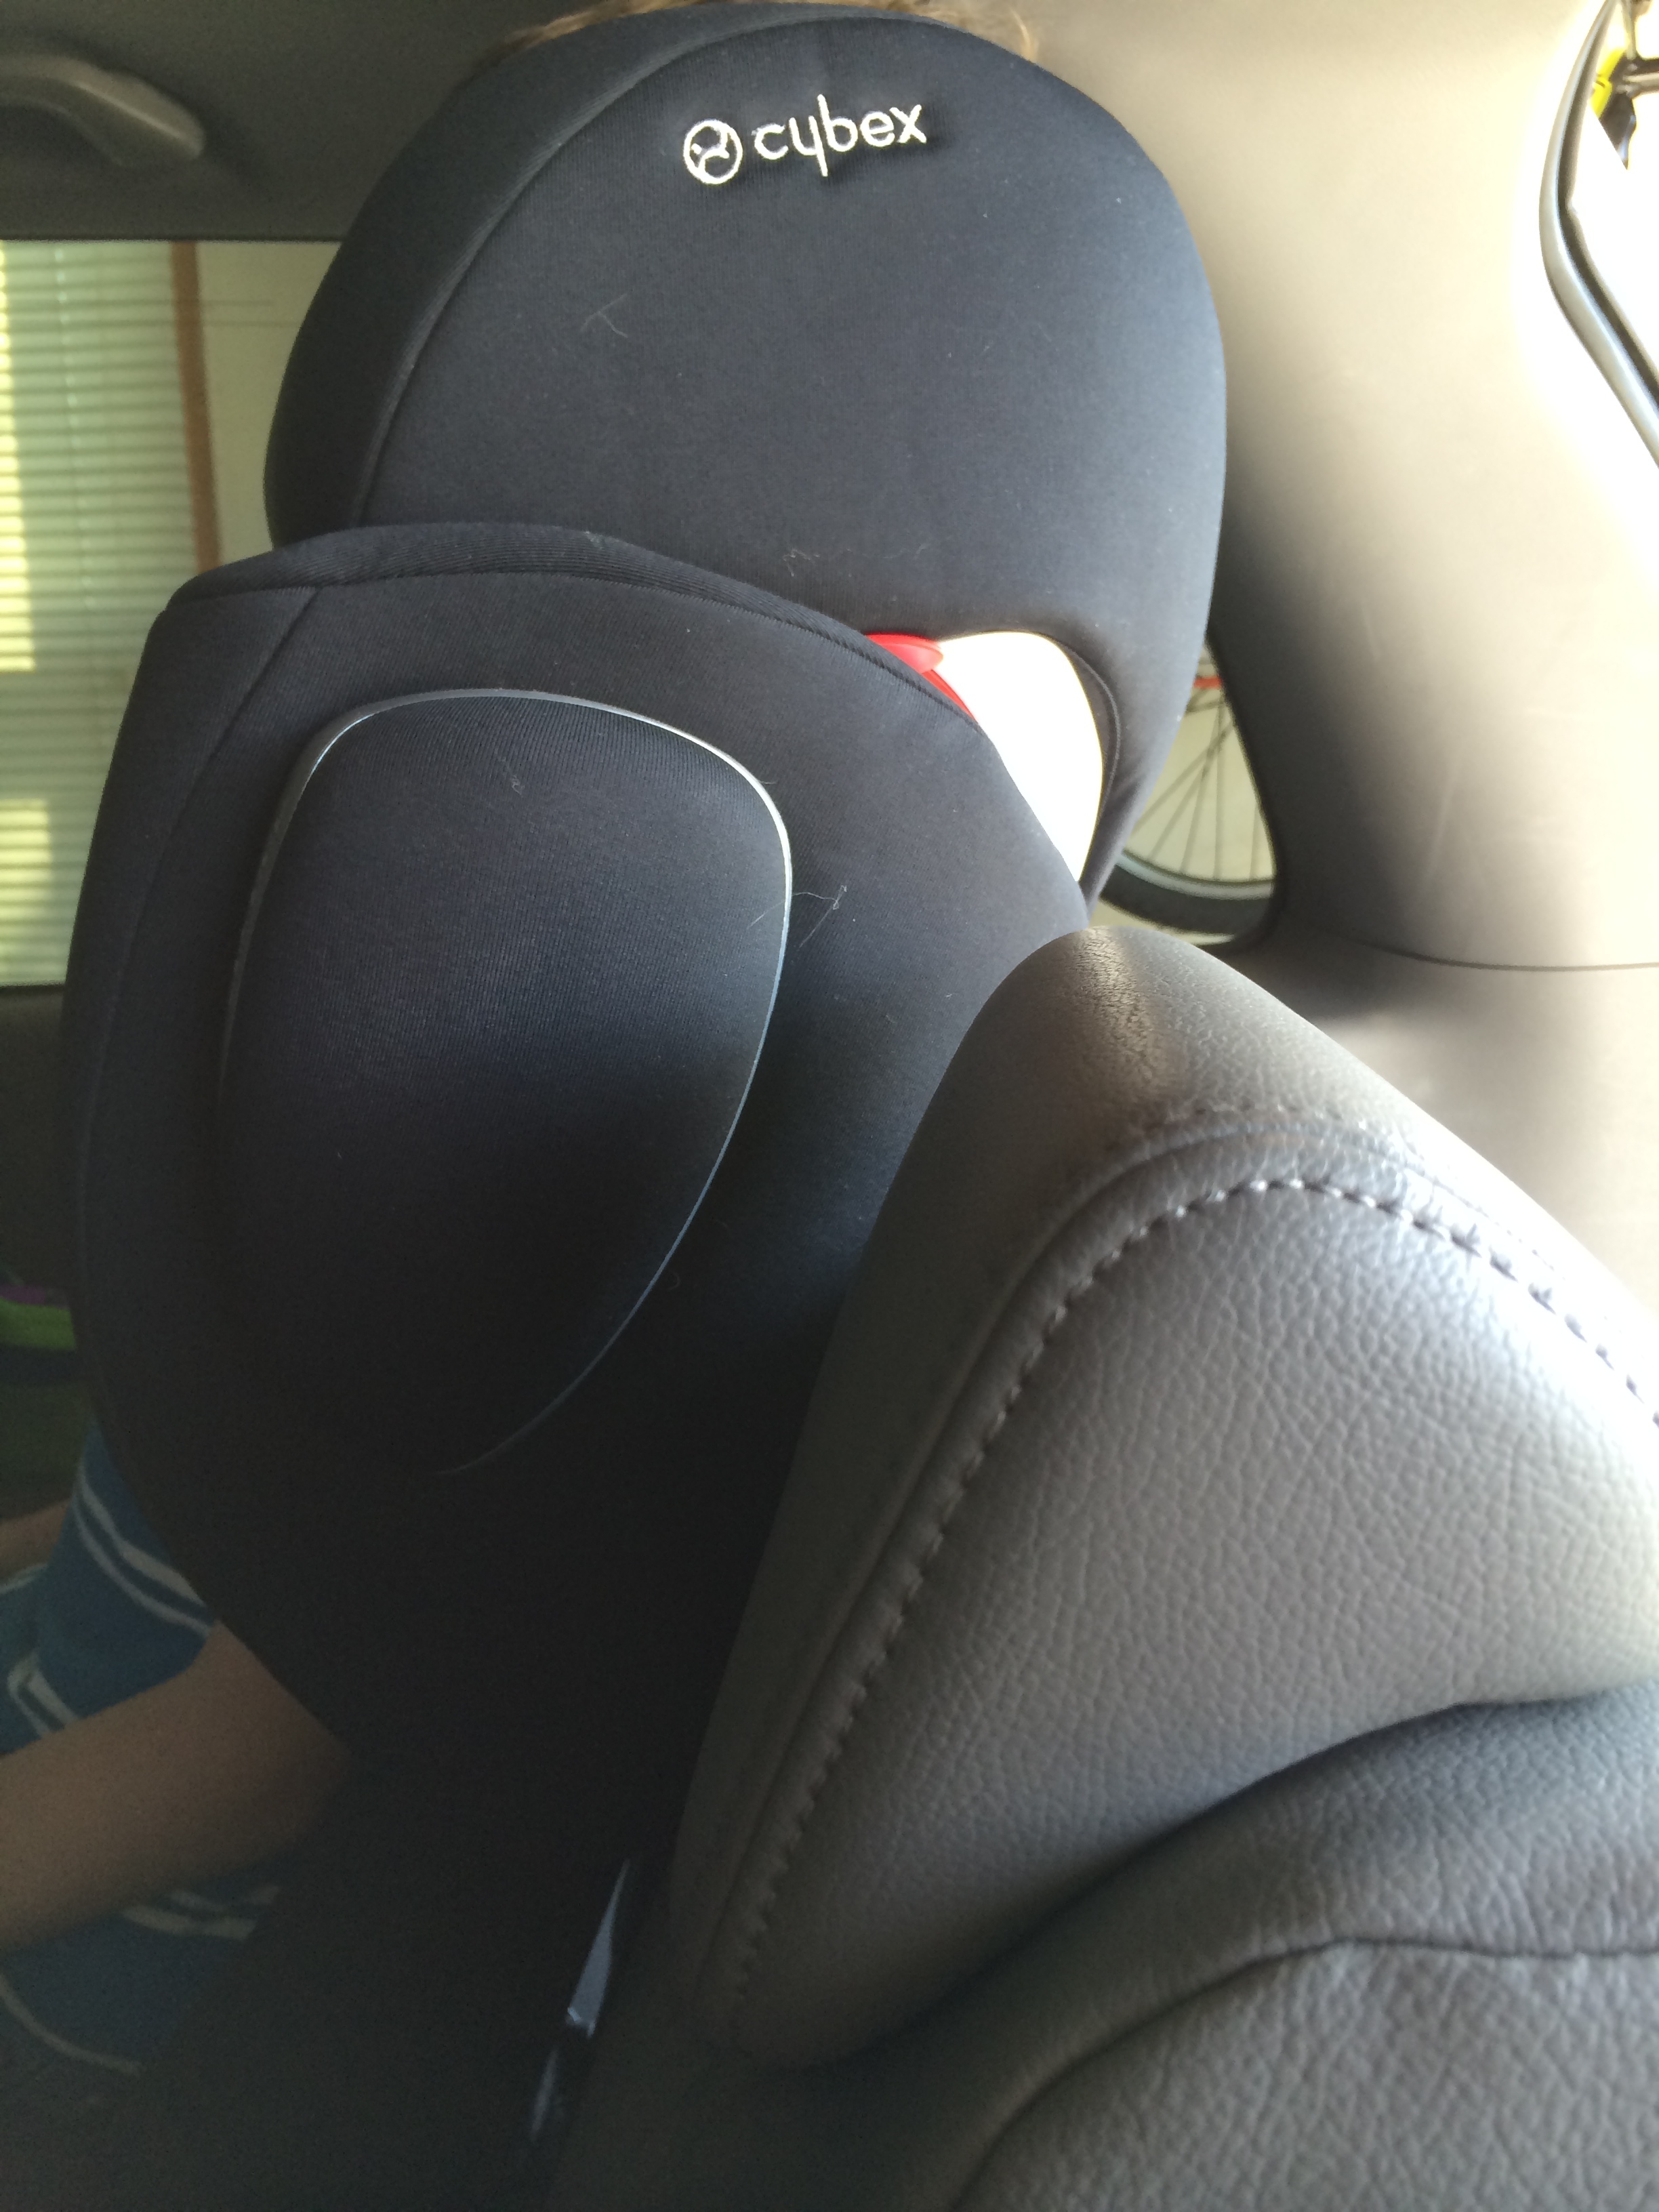 CYBEX Pallas M-Fix SL Car Seat Review